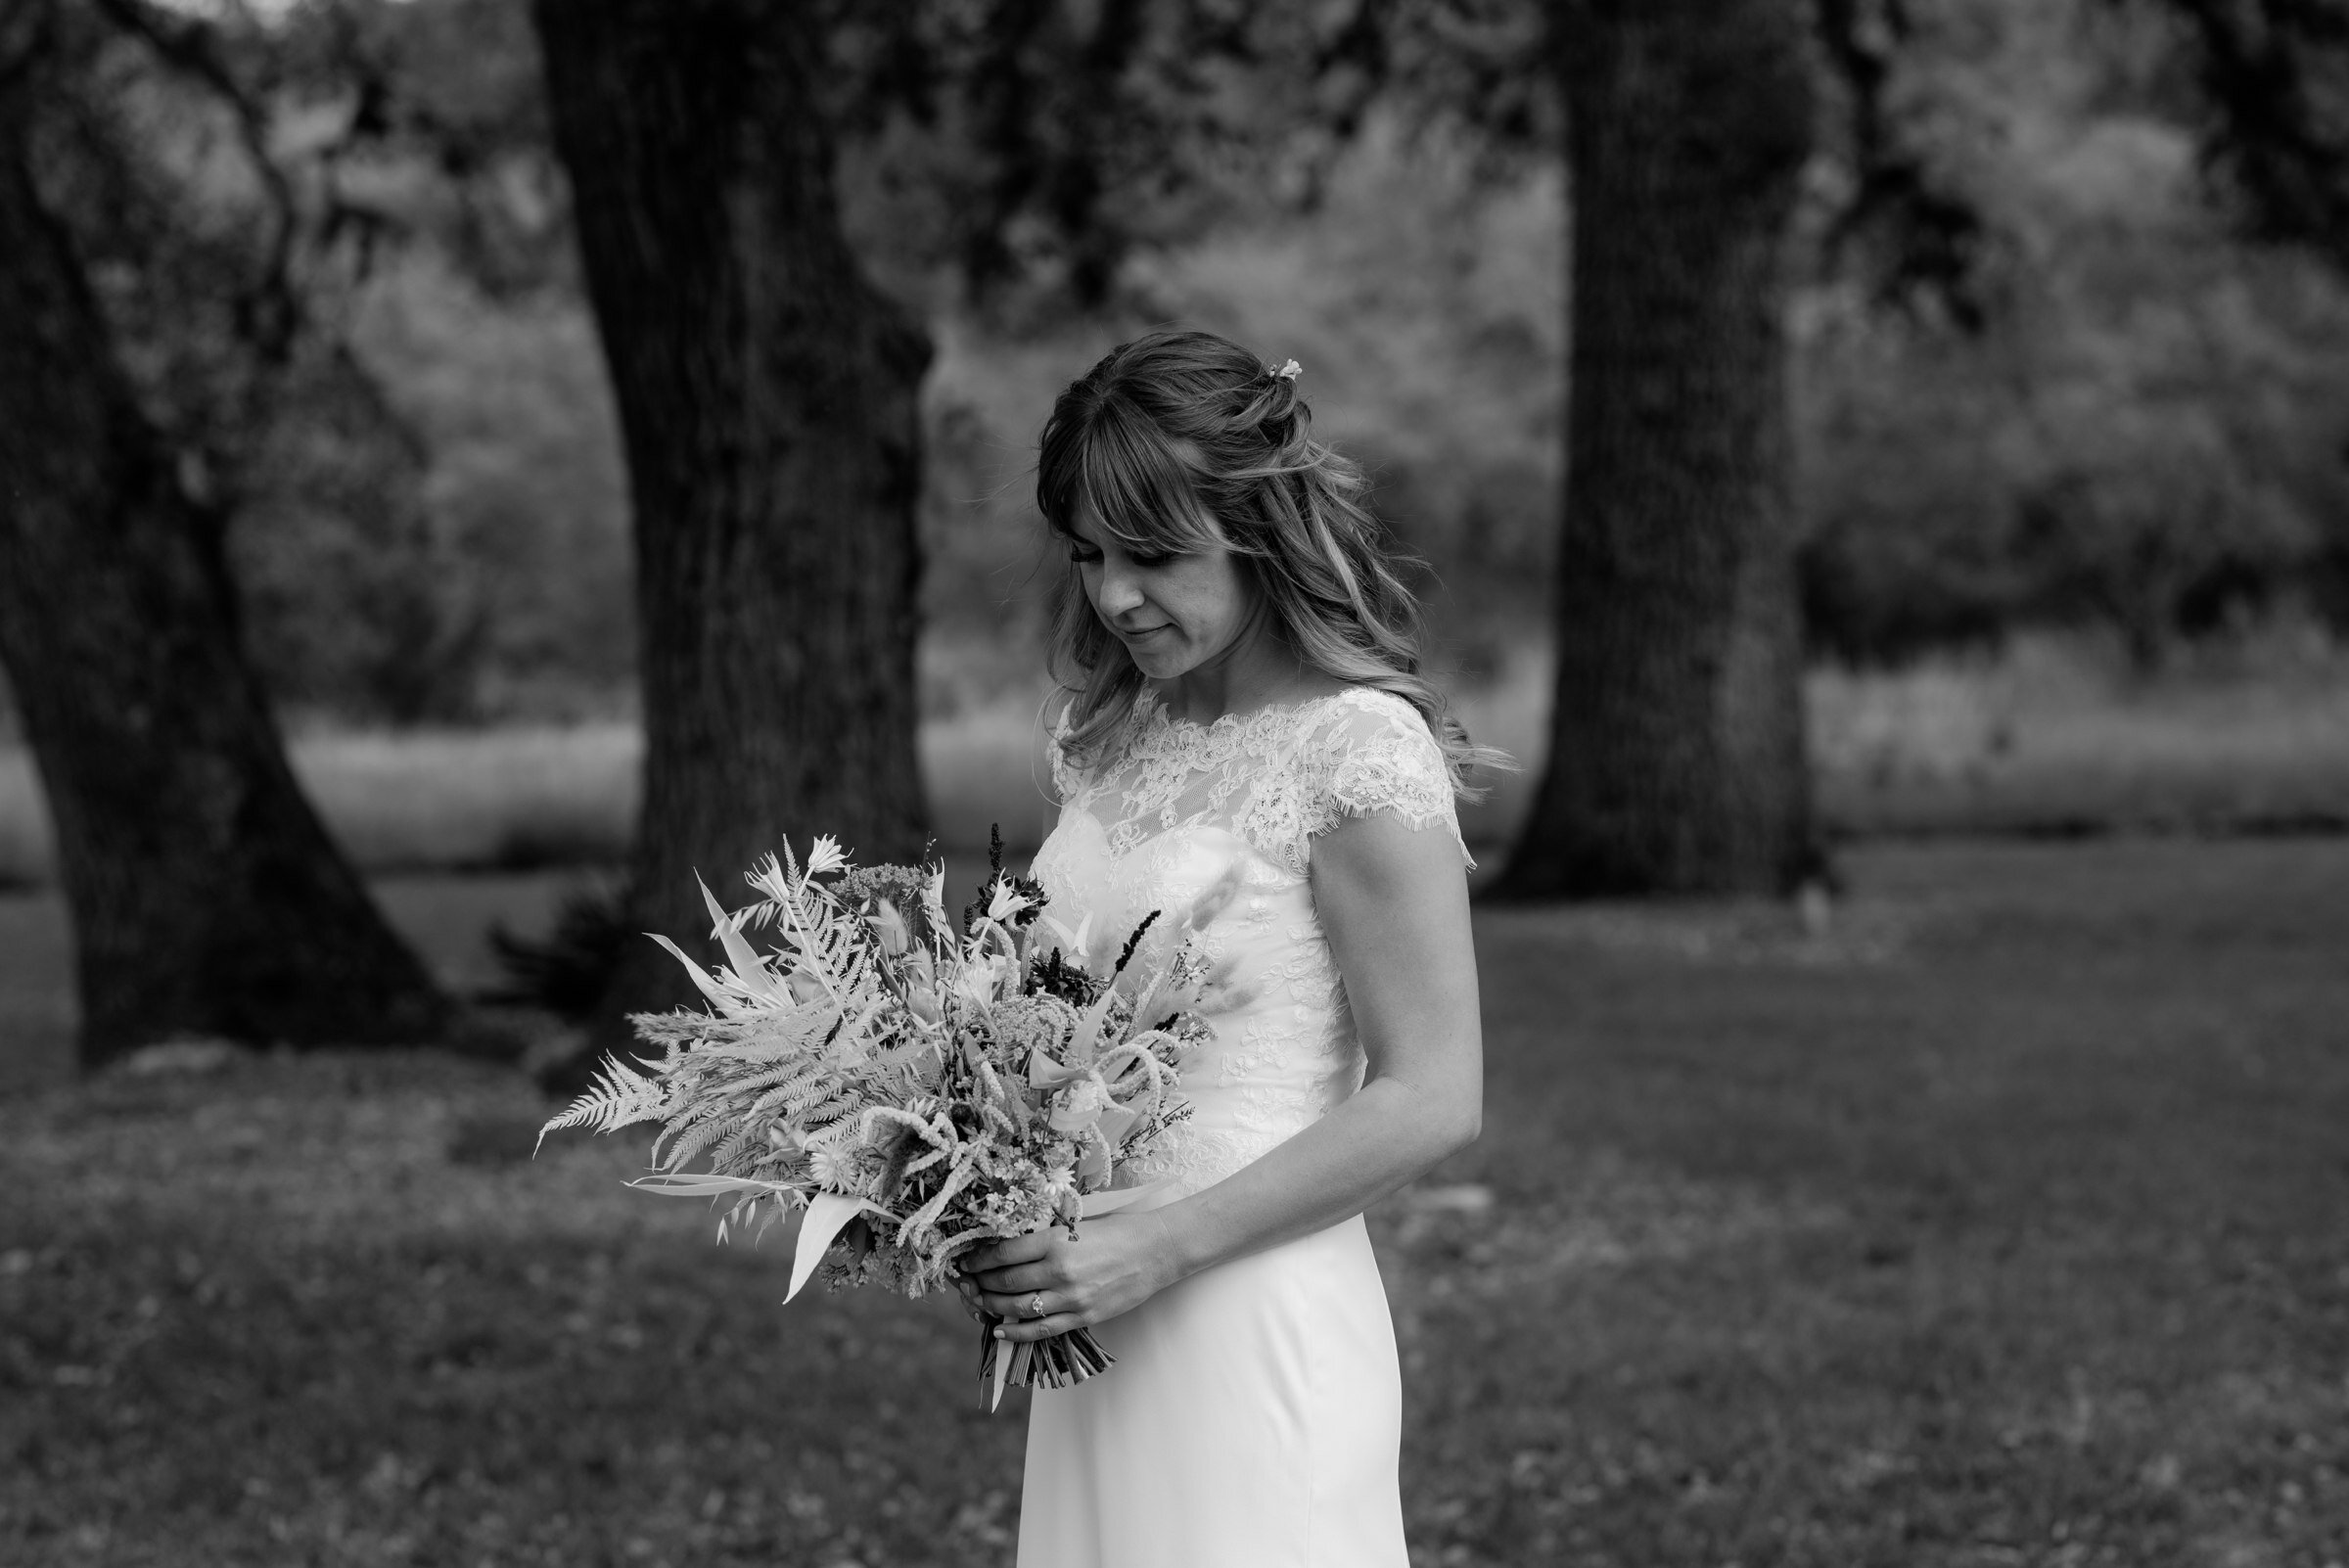  portrait of bride holding bouquet at plant at kyle wedding venue austin texas 